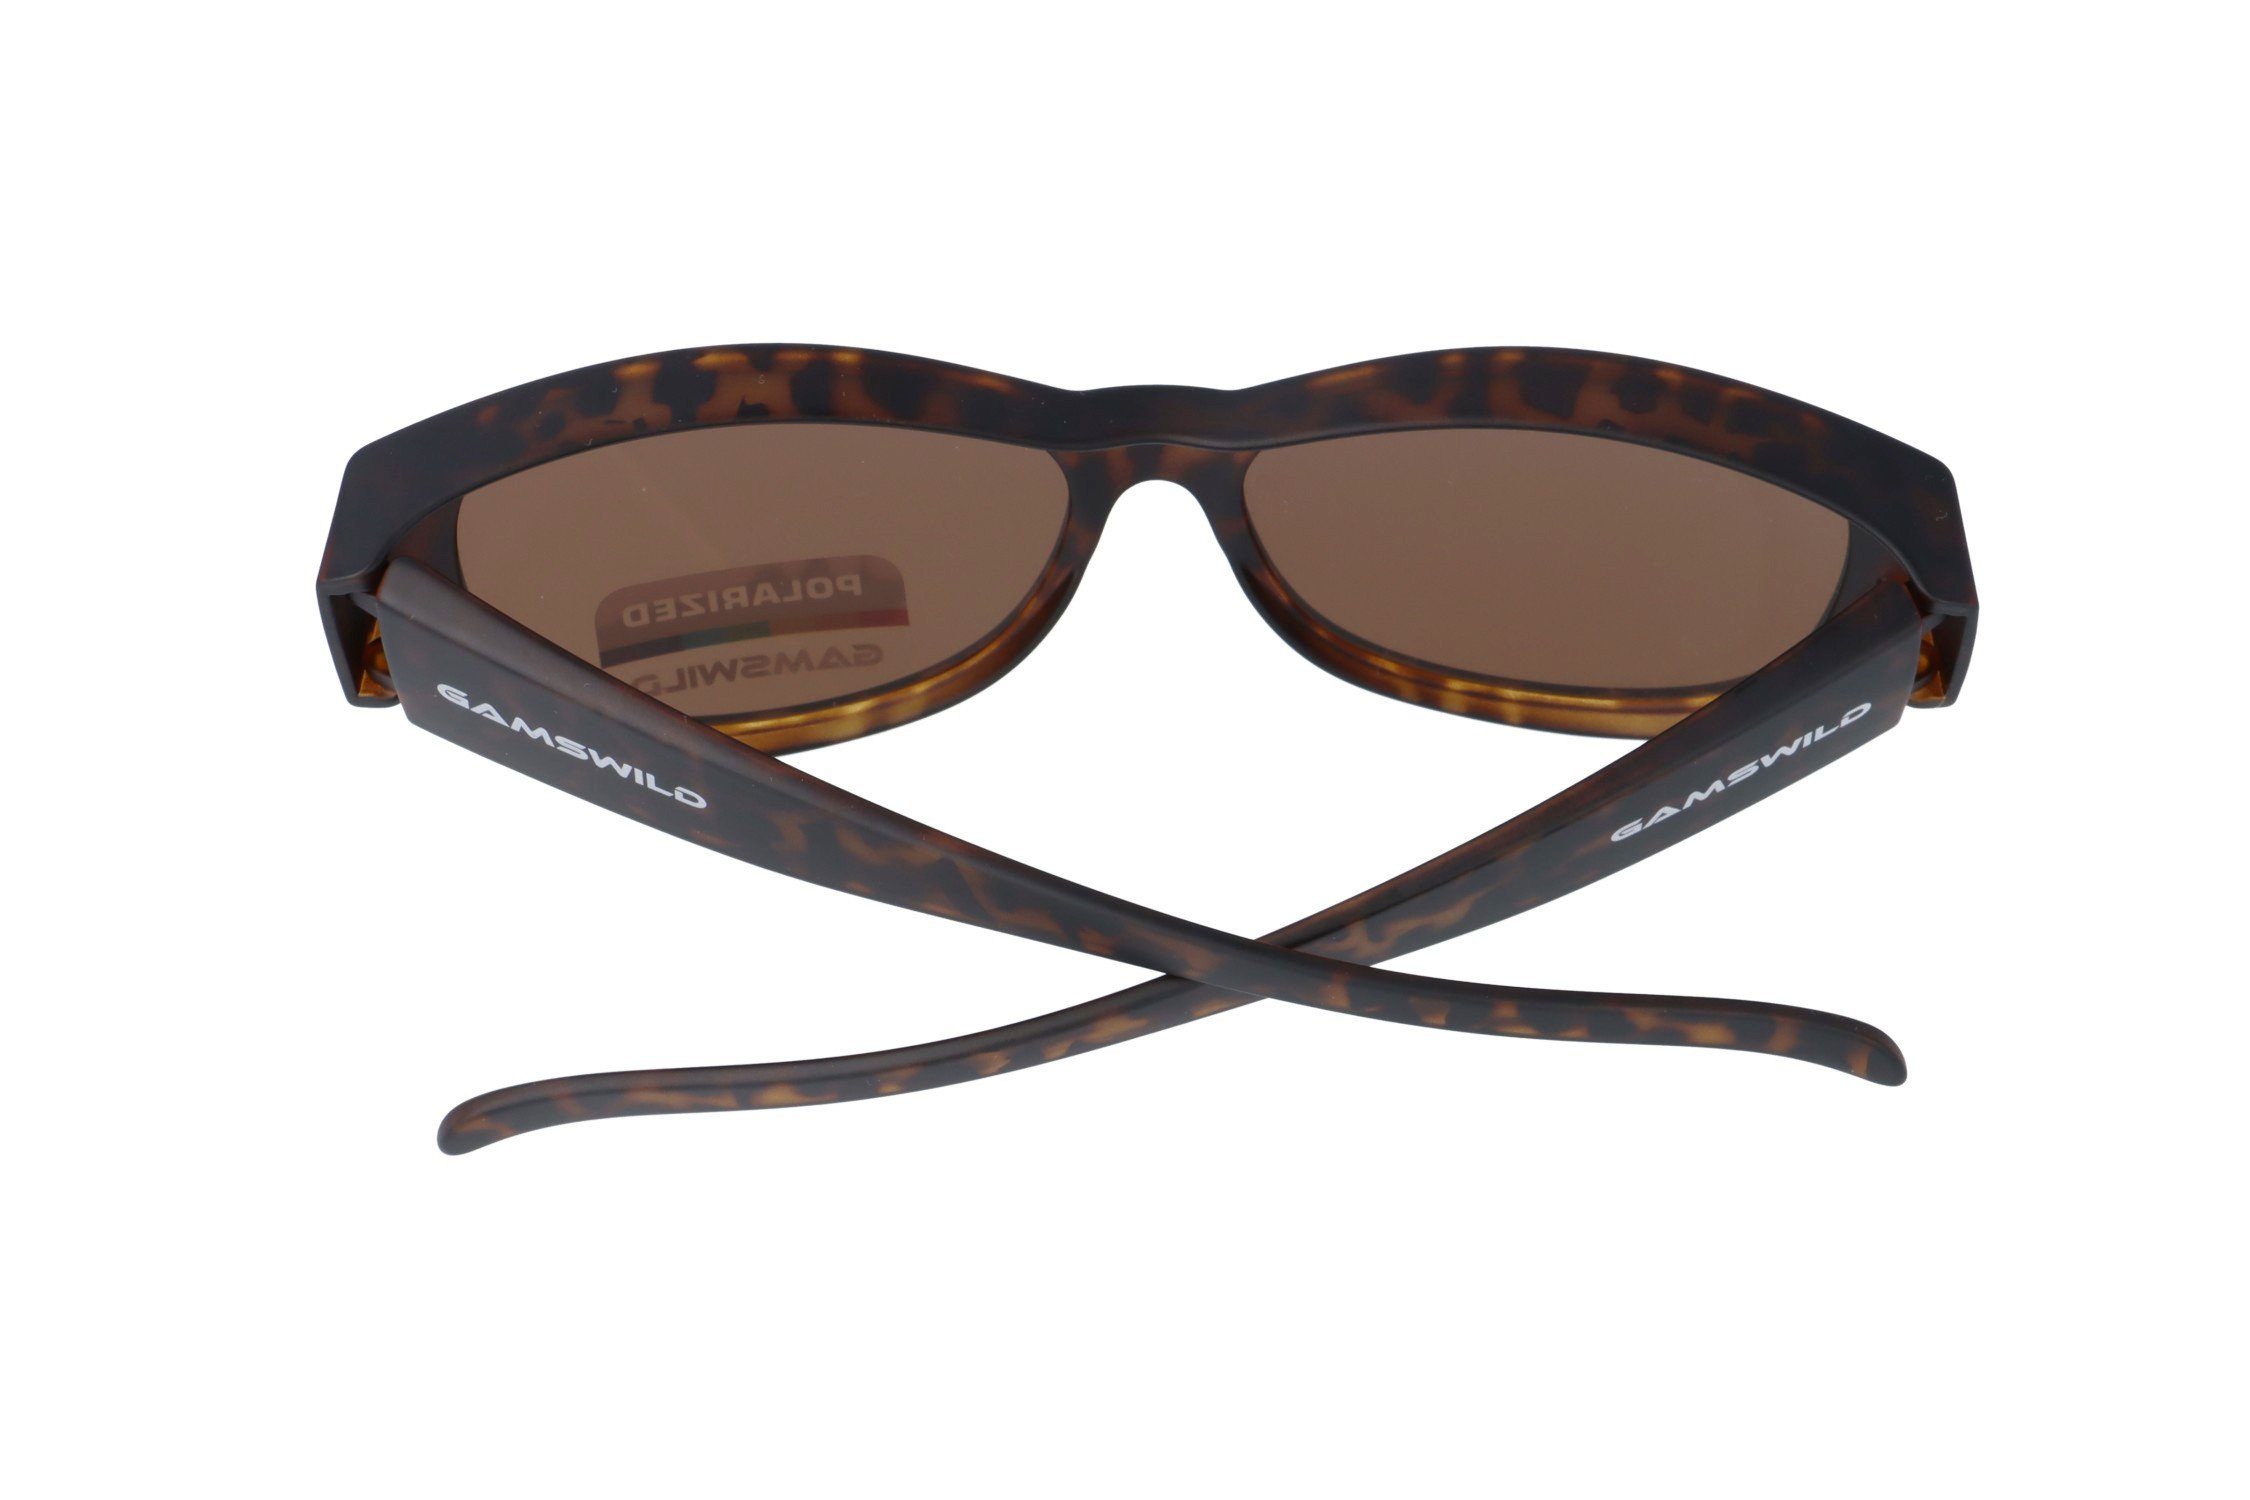 Überbrille Damen braun, universelle polarisiert, Gamswild Passform WS4032 grau schwarz, Herren, Sonnenbrille Sportbrille